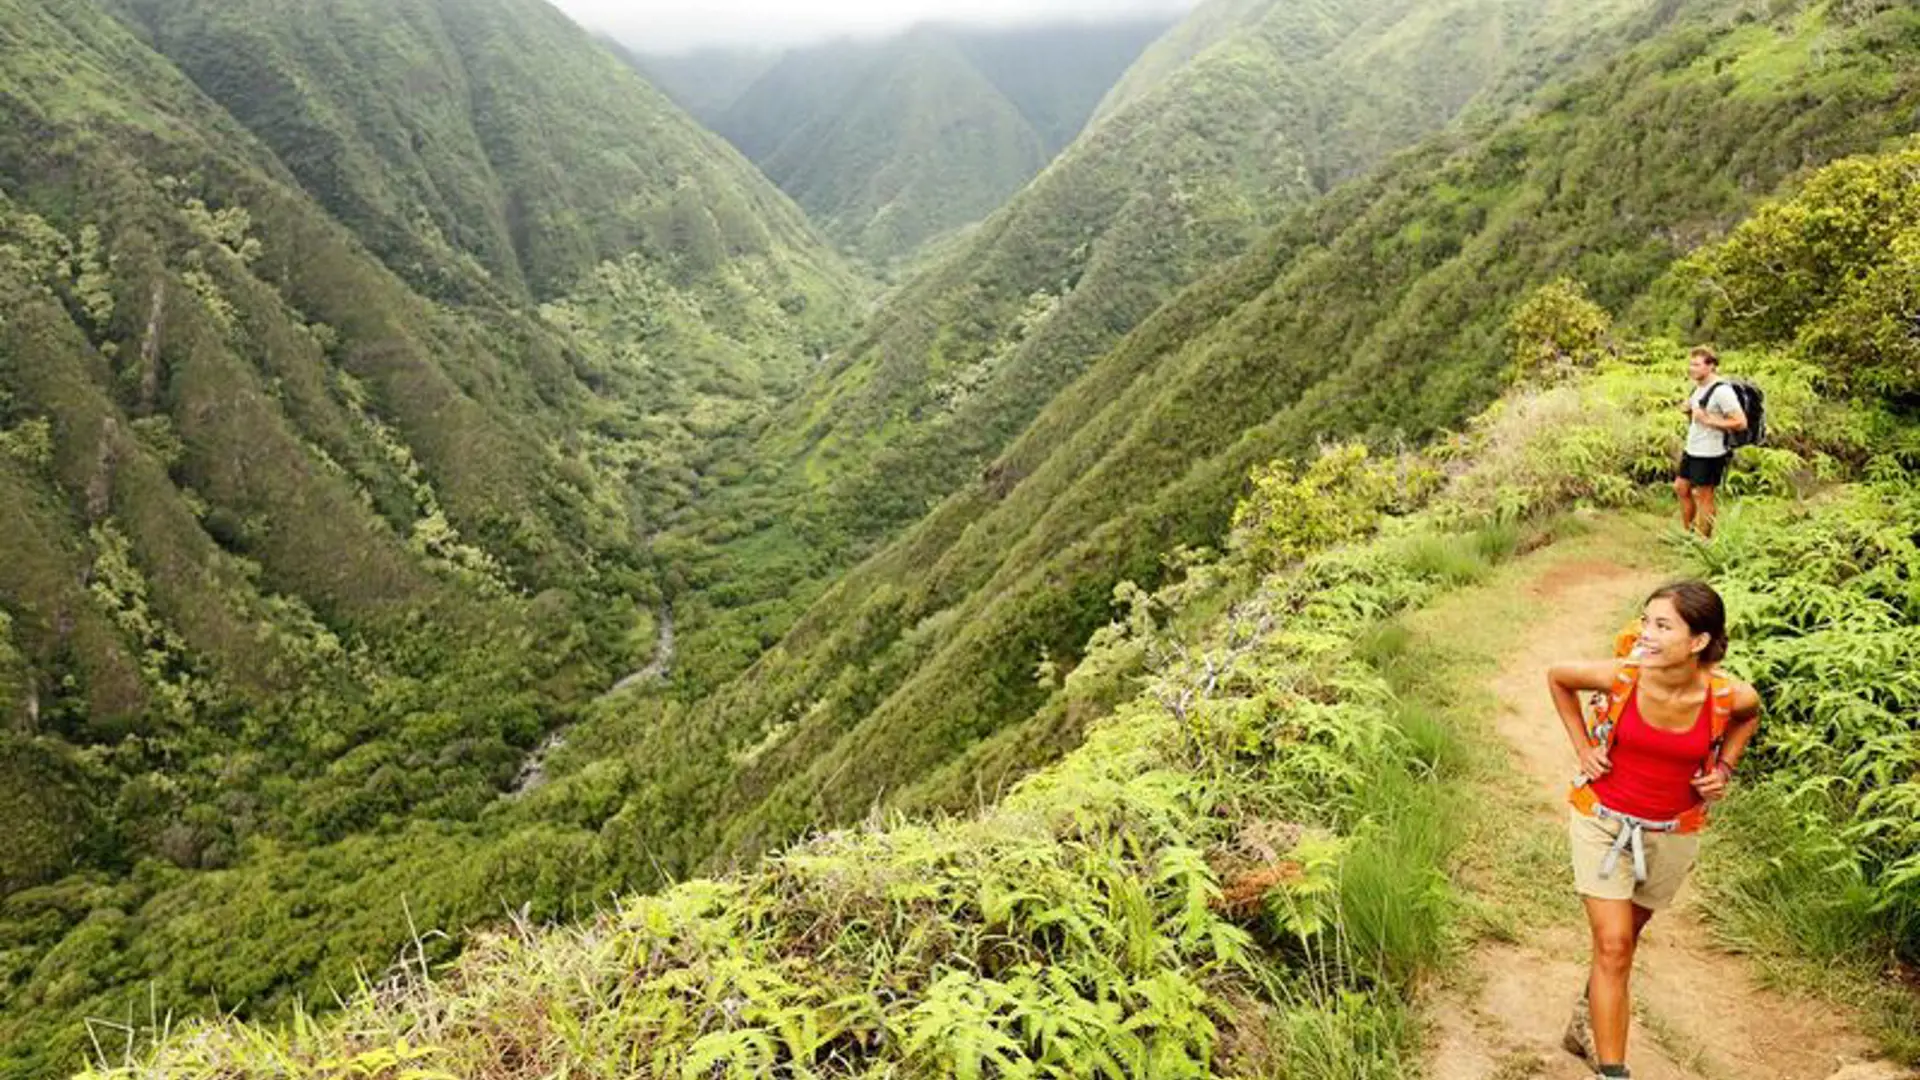 MAUI - Waihee ridge trail er blot en af mange spektakulære vandreture på Maui, Check Point Travel